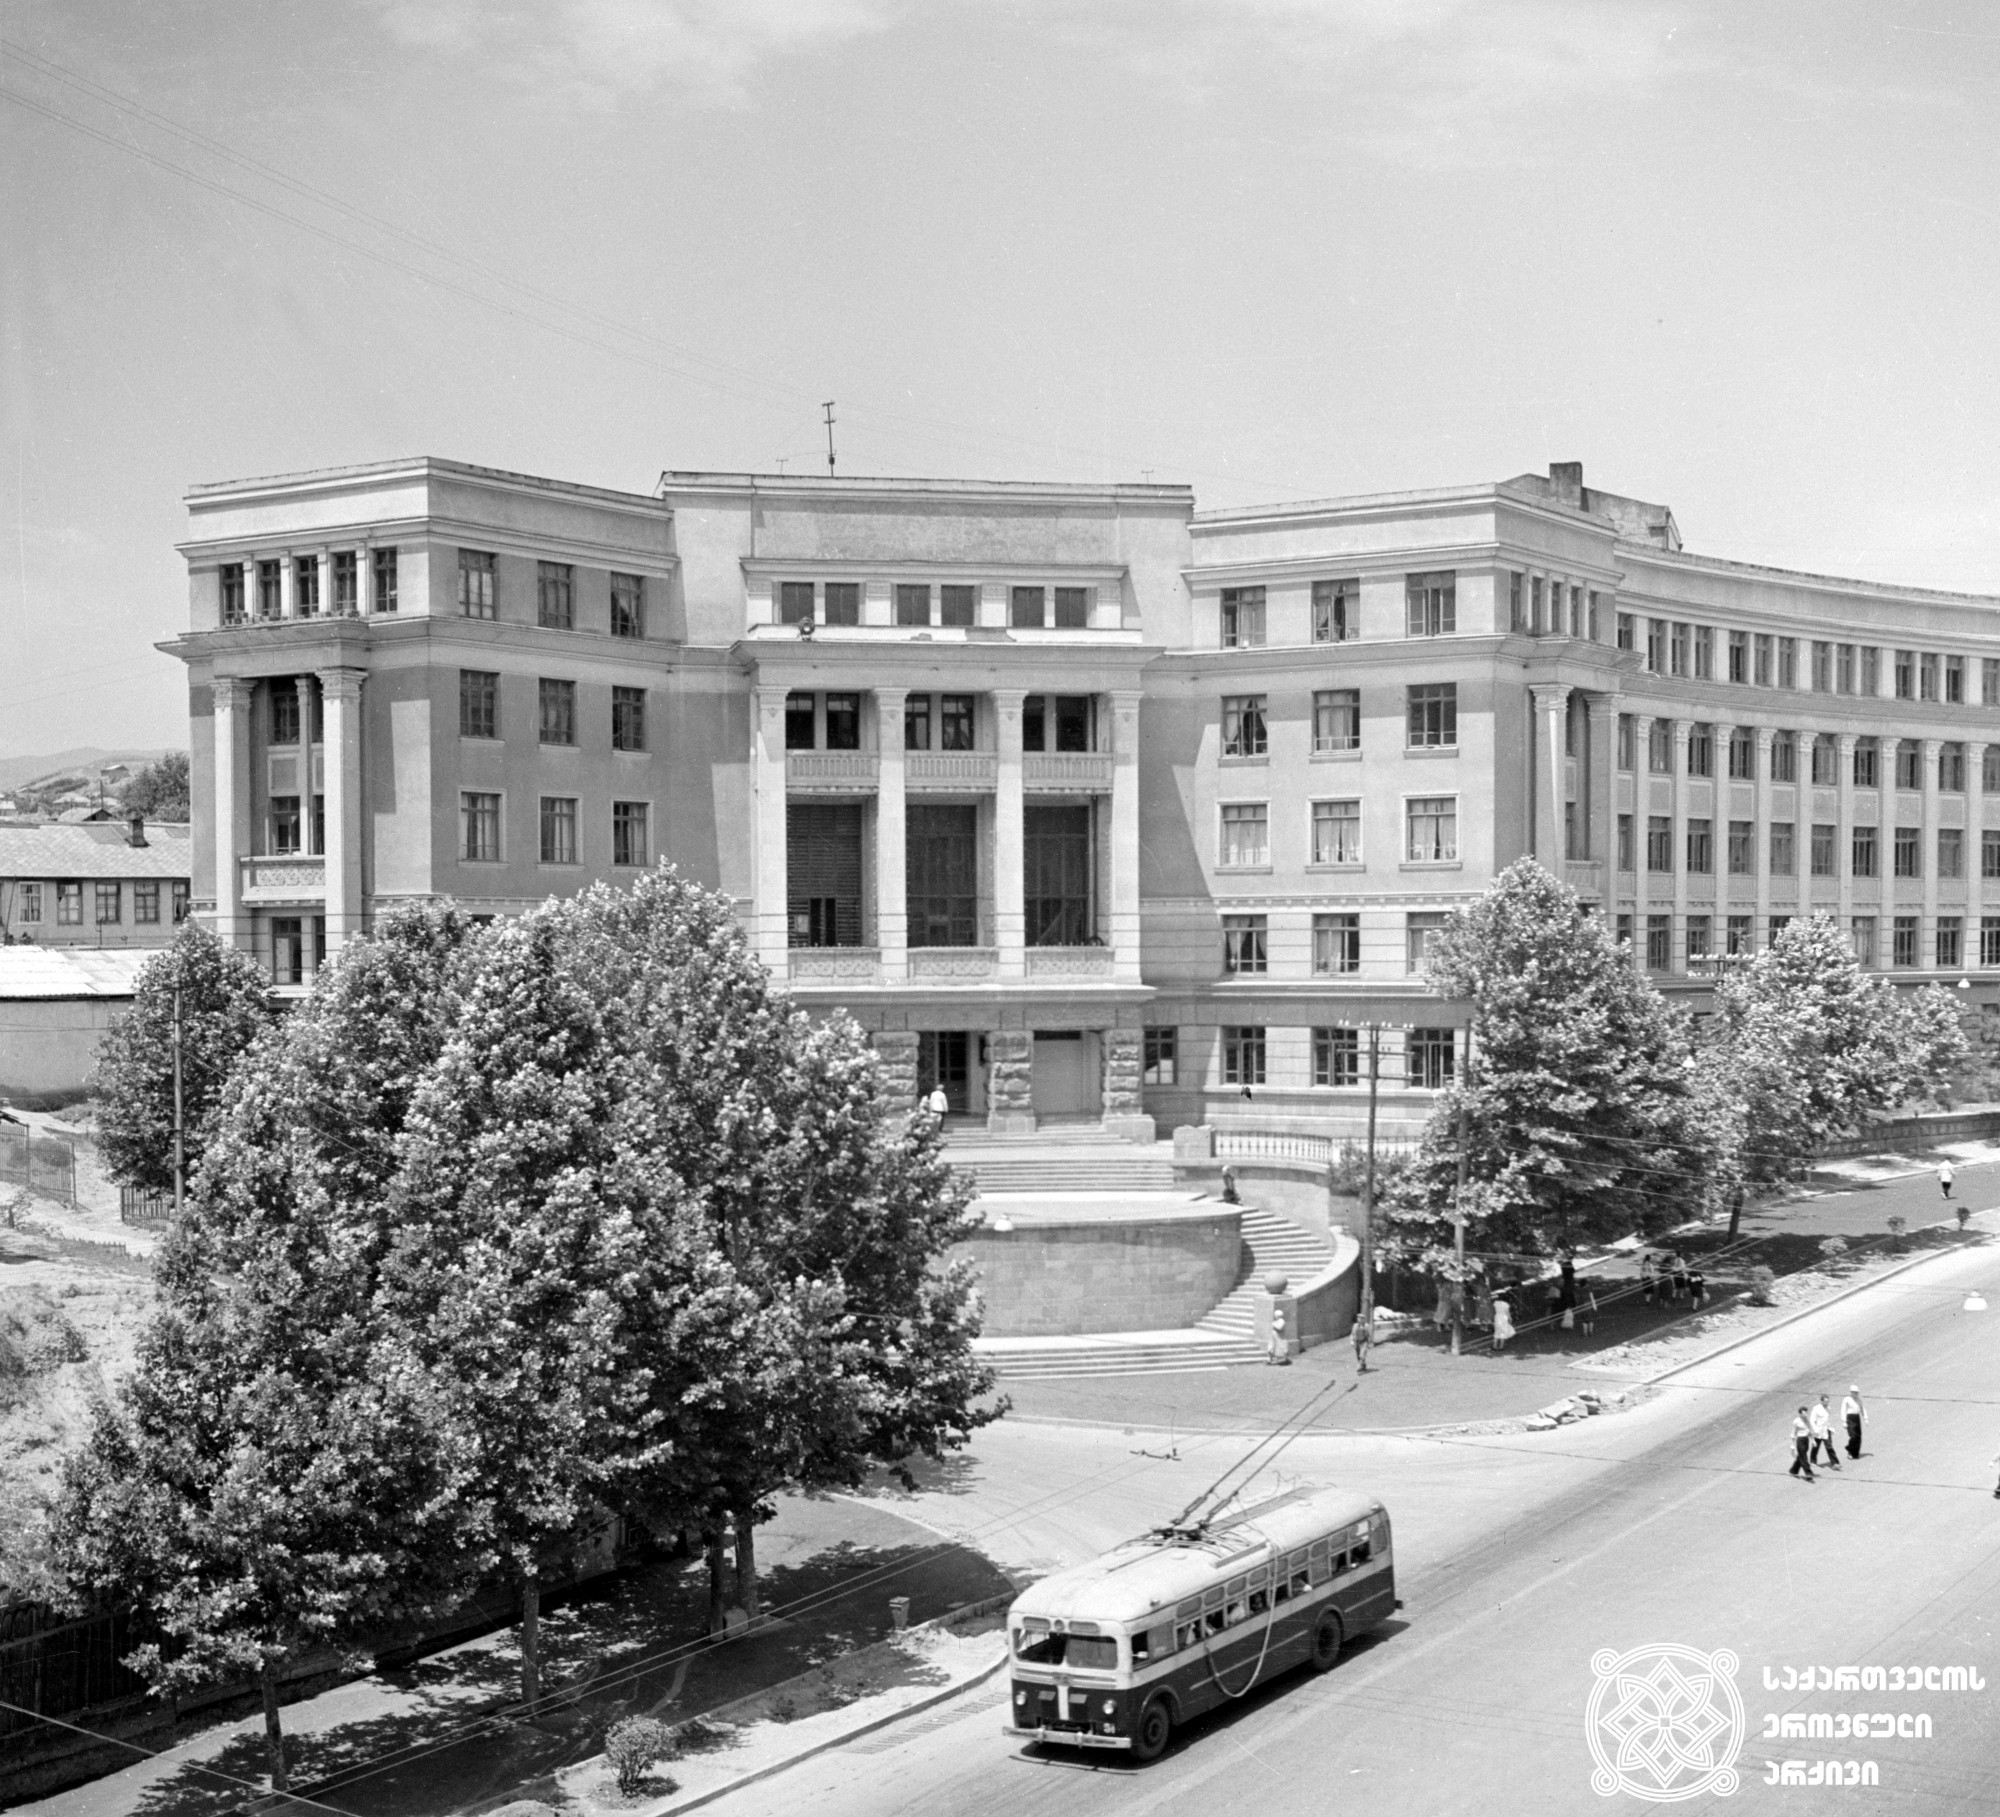 რკინიგზის ტრანსპორტის ინჟინერთა ინსტიტუტის შენობის ხედი (დღევანდელი ტექნიკური უნივერსიტეტის I კორპუსი). თბილისი. <br>ფოტო: ვიქტორ ჯეირანოვი. 1955. <br>
View of Railway Transport Engineers Institute (today I block of Technical University). Tbilisi. <br> Photo by Victor Jeiranov. <br> 1955.